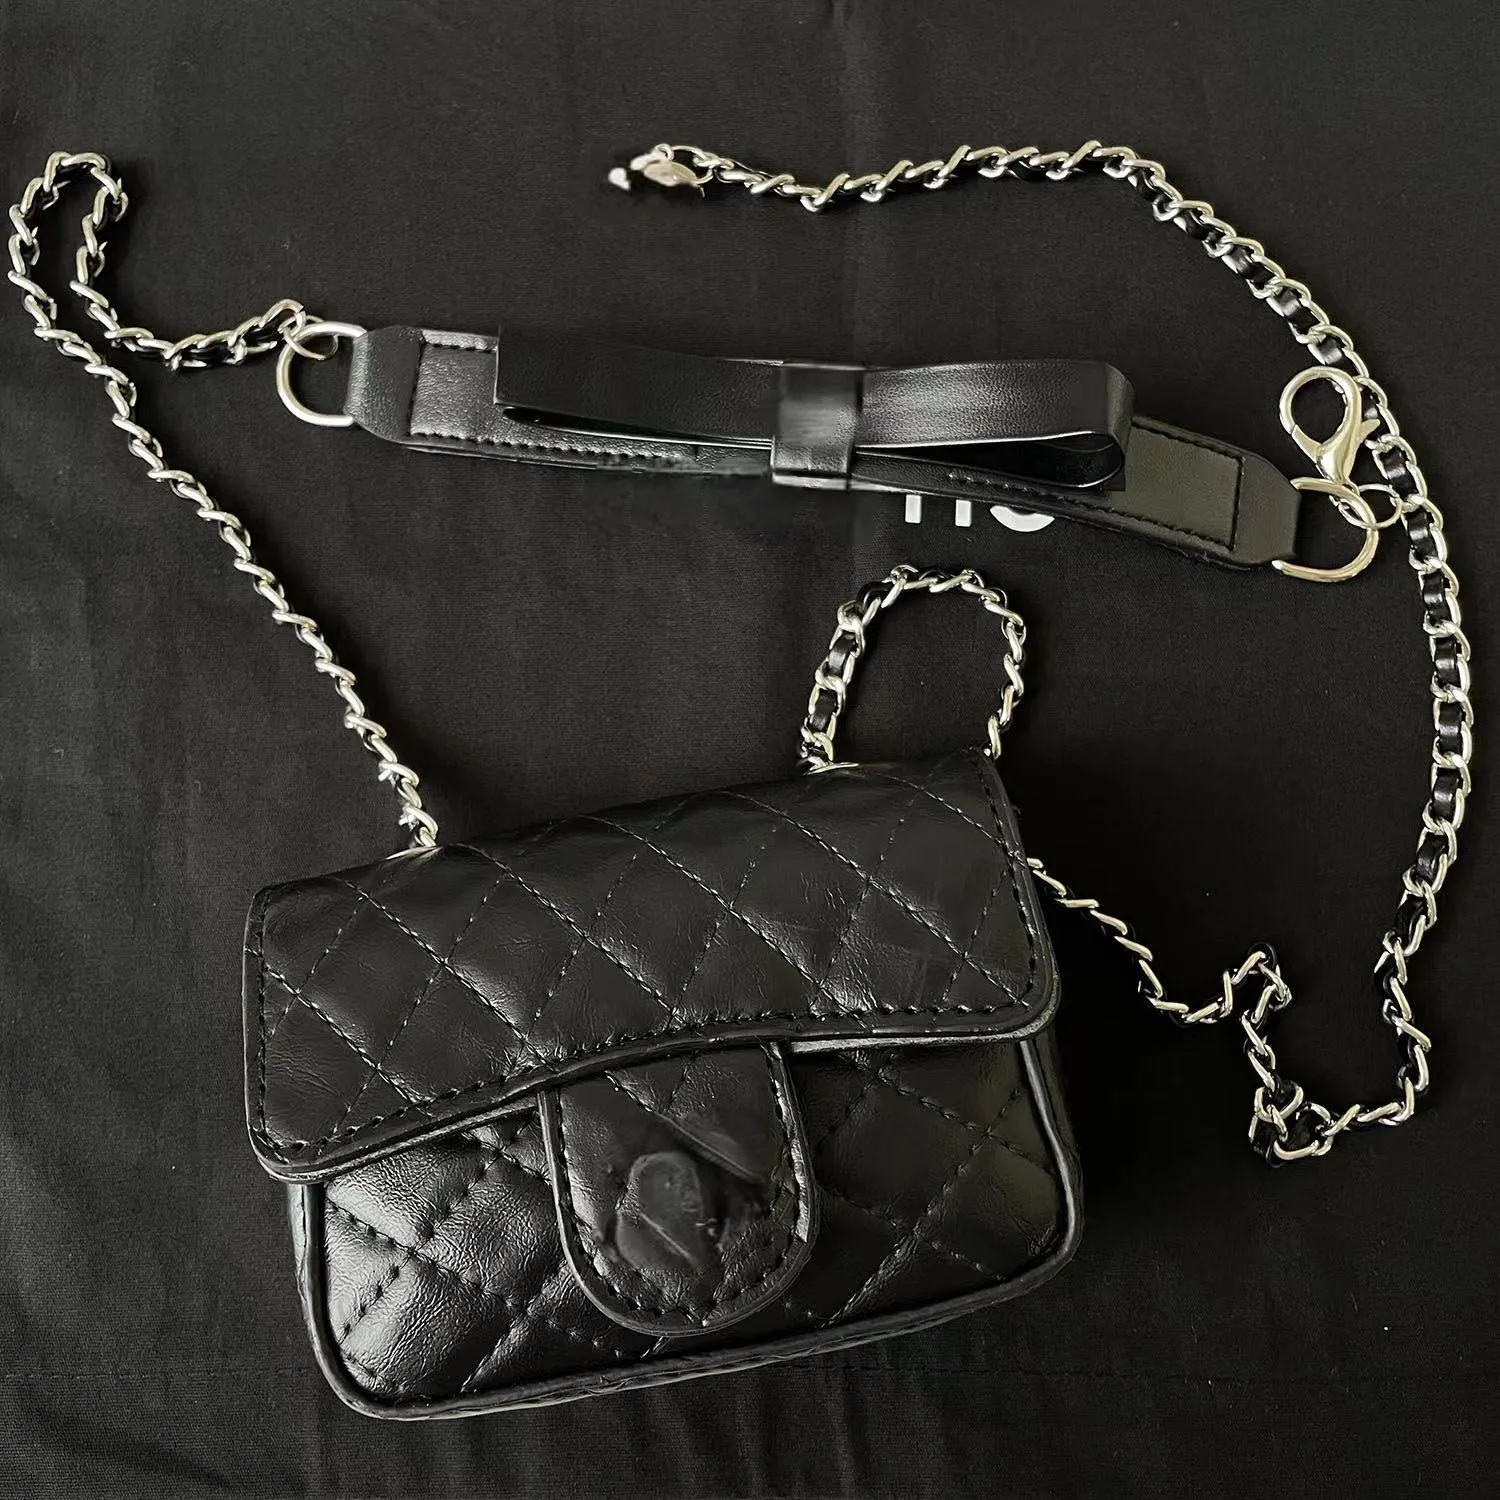 CC Designer Bag Crossbody Luxury Handtasche Klassische Klassische kleine quadratische Geldbörse Modetaschen Leder Handtasche Ladies Tote Klappe Tasche